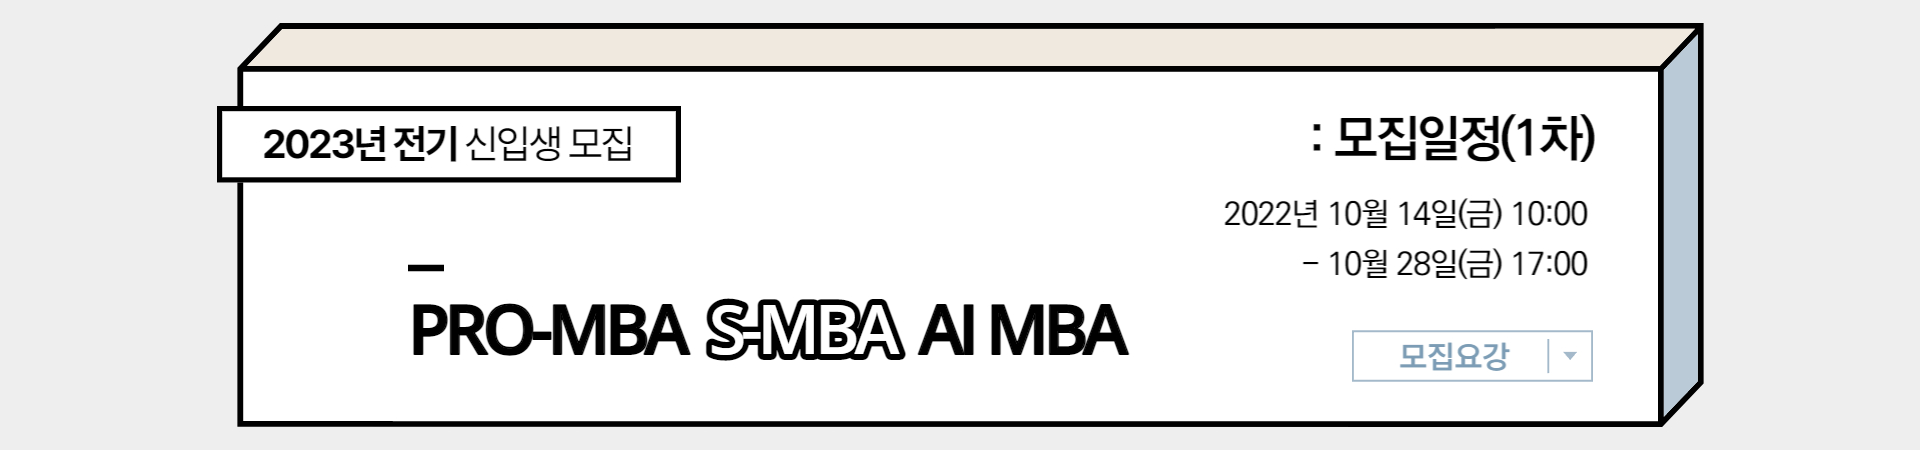 S-MBA